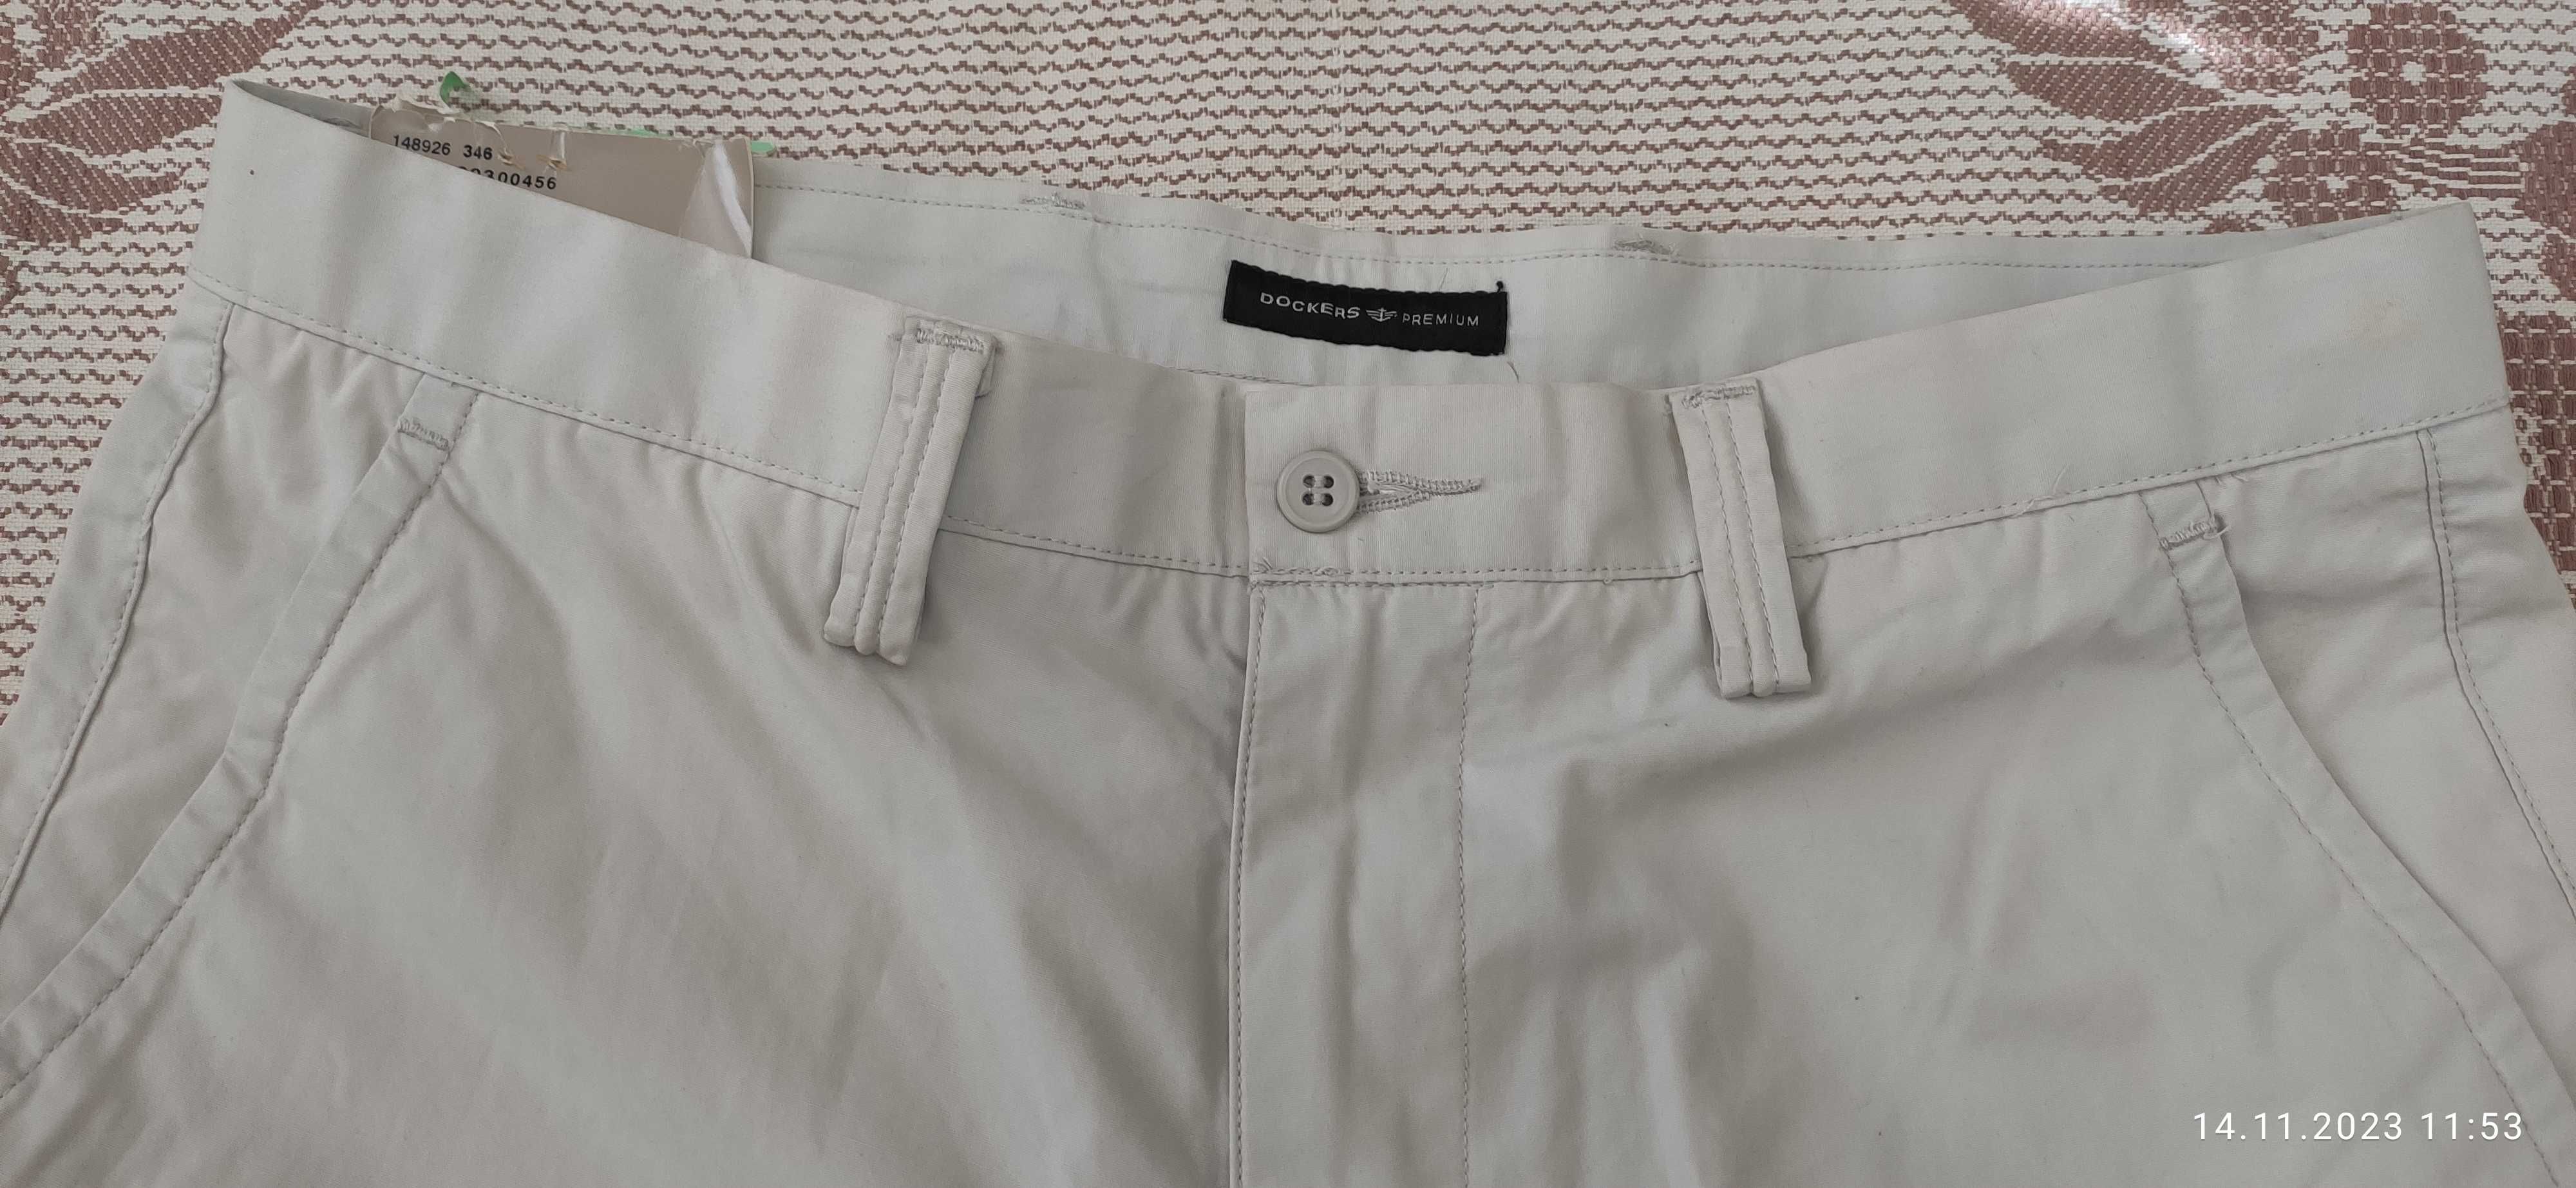 Dockers Premium - брюки чиносы, новые.